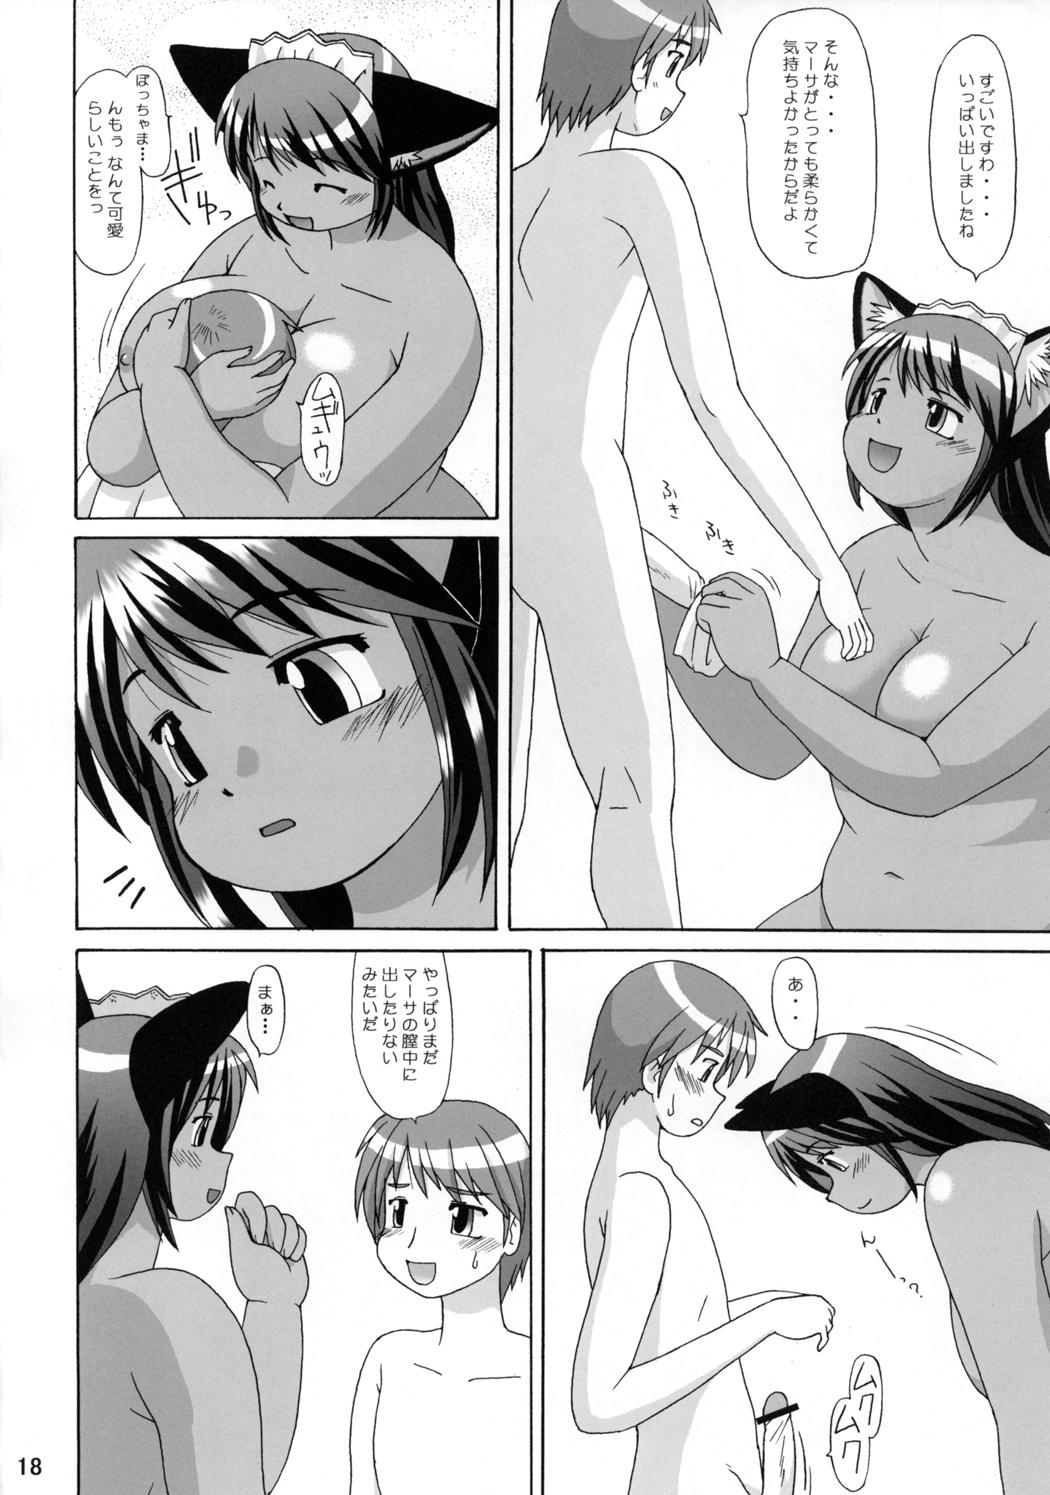 cat censored chubby feline female hug human maid maid_uniform male penis